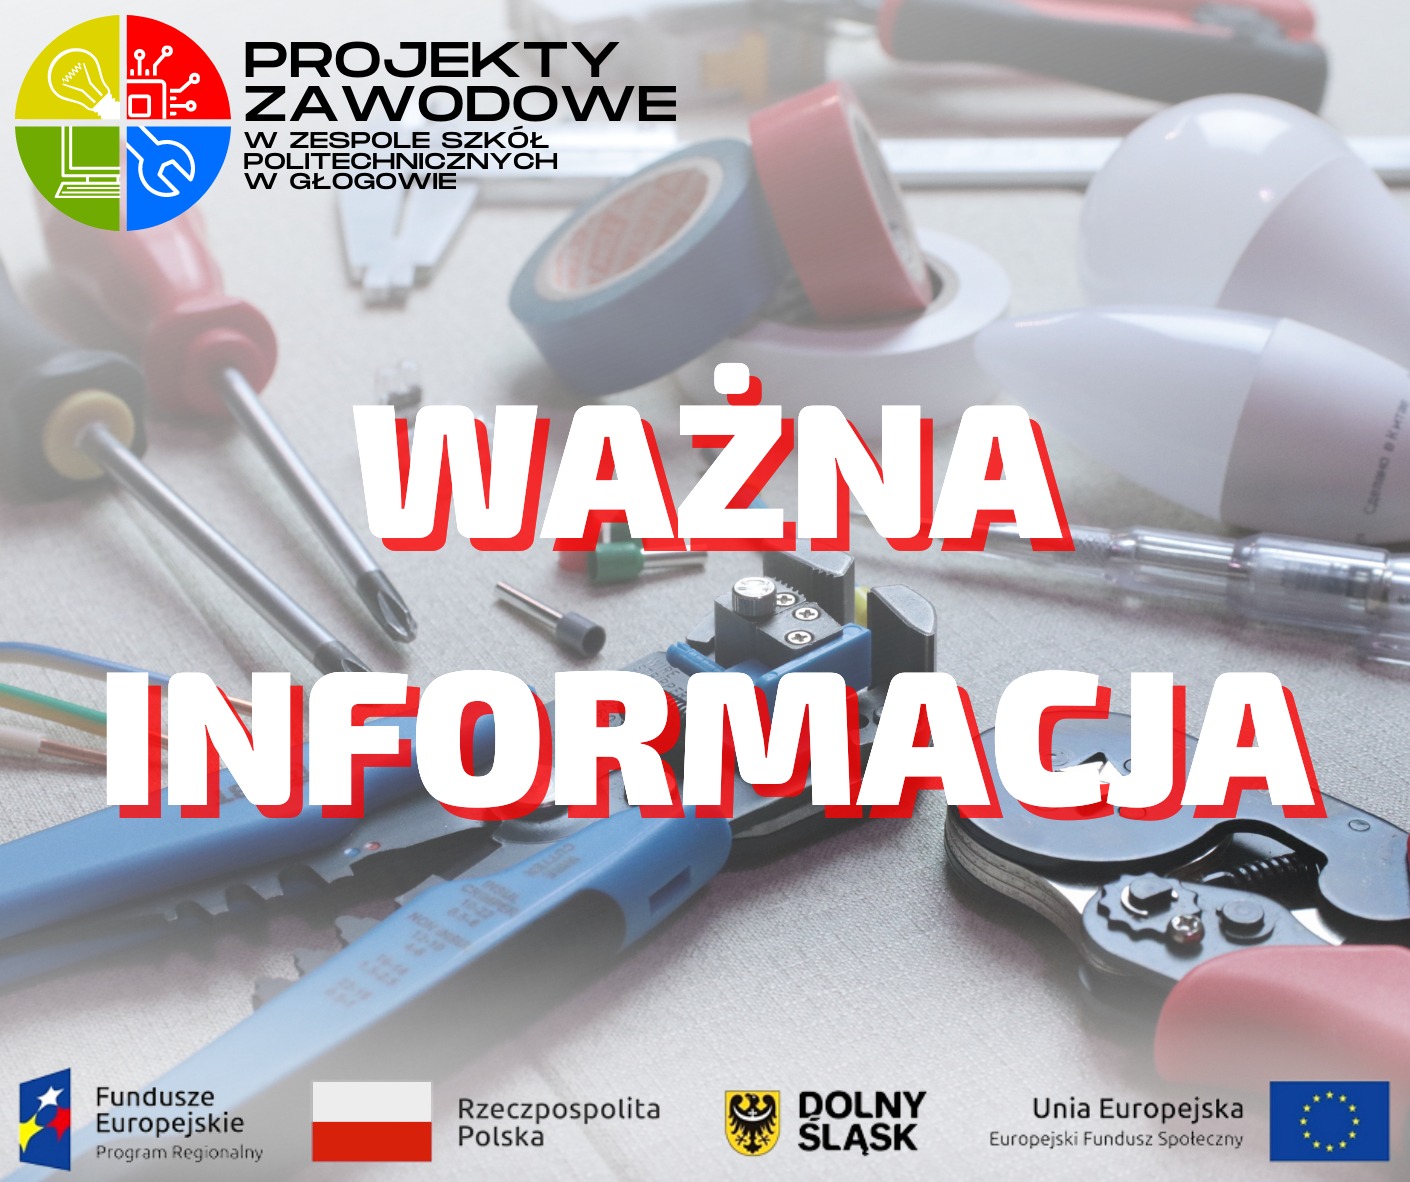 Szkolenie dla techników mechatroników, Zespół Szkół Politechnicznych w Głogowie